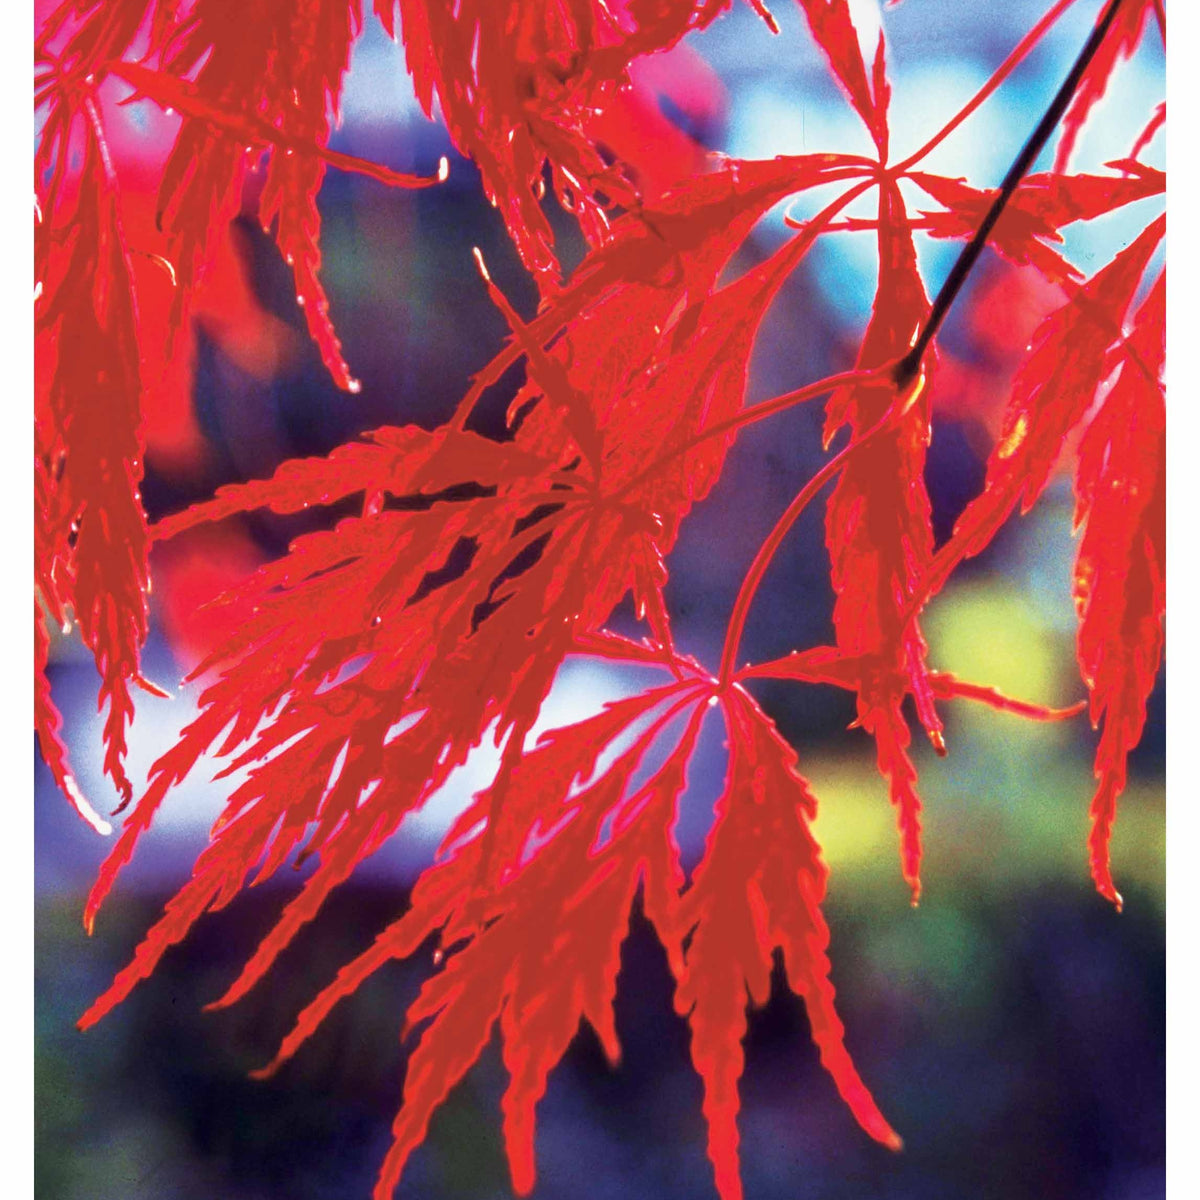 Erable du Japon Garnet - Acer palmatum dissectum garnet